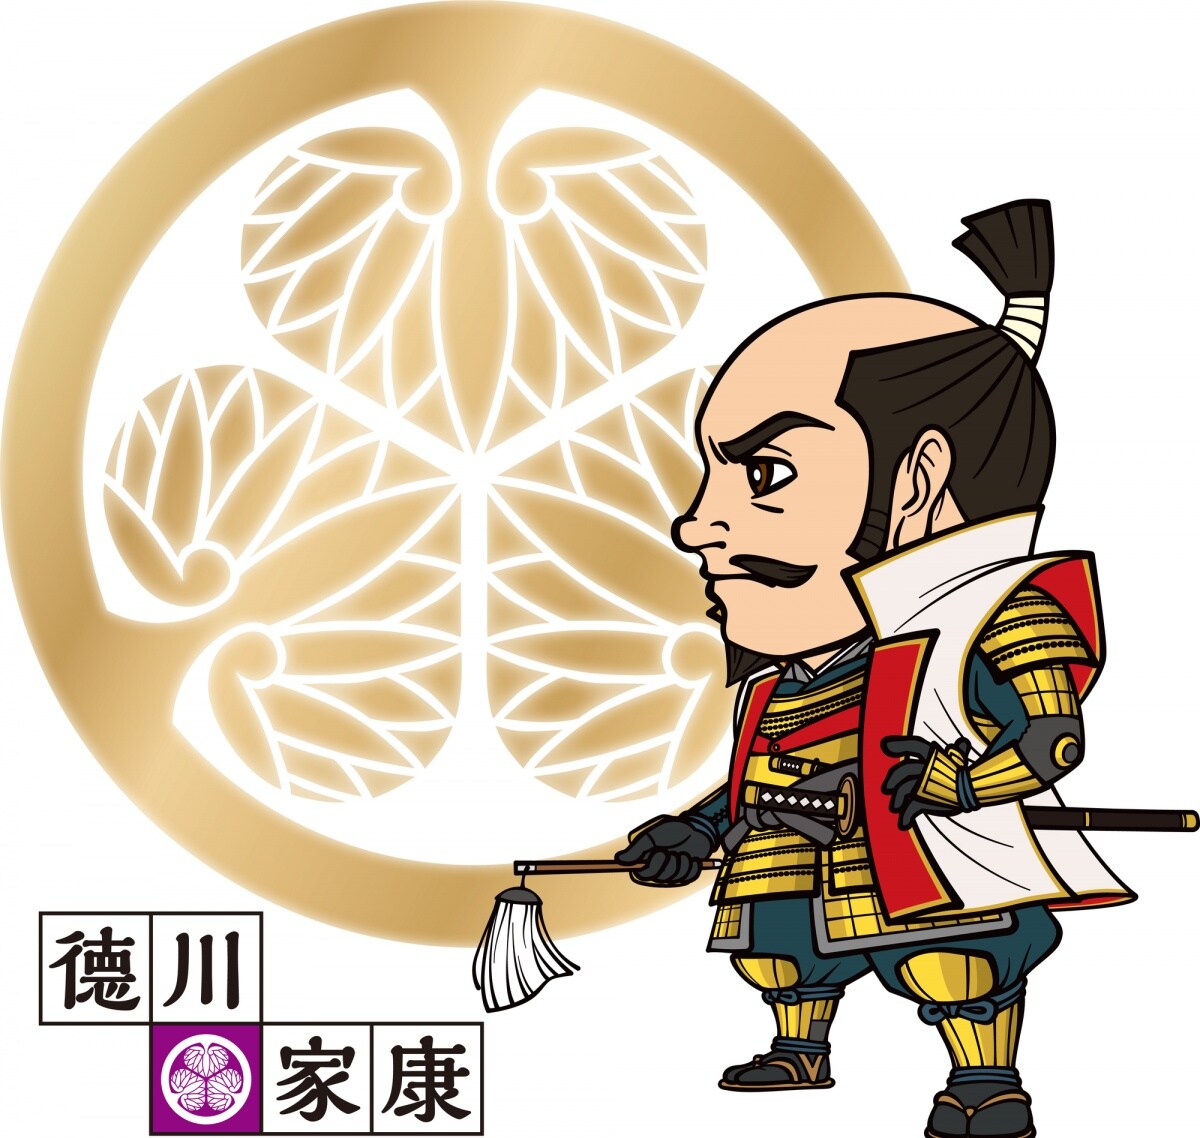 江户时代(1603年-1868年)的开创者德川家康结束了长期混乱的日本战国